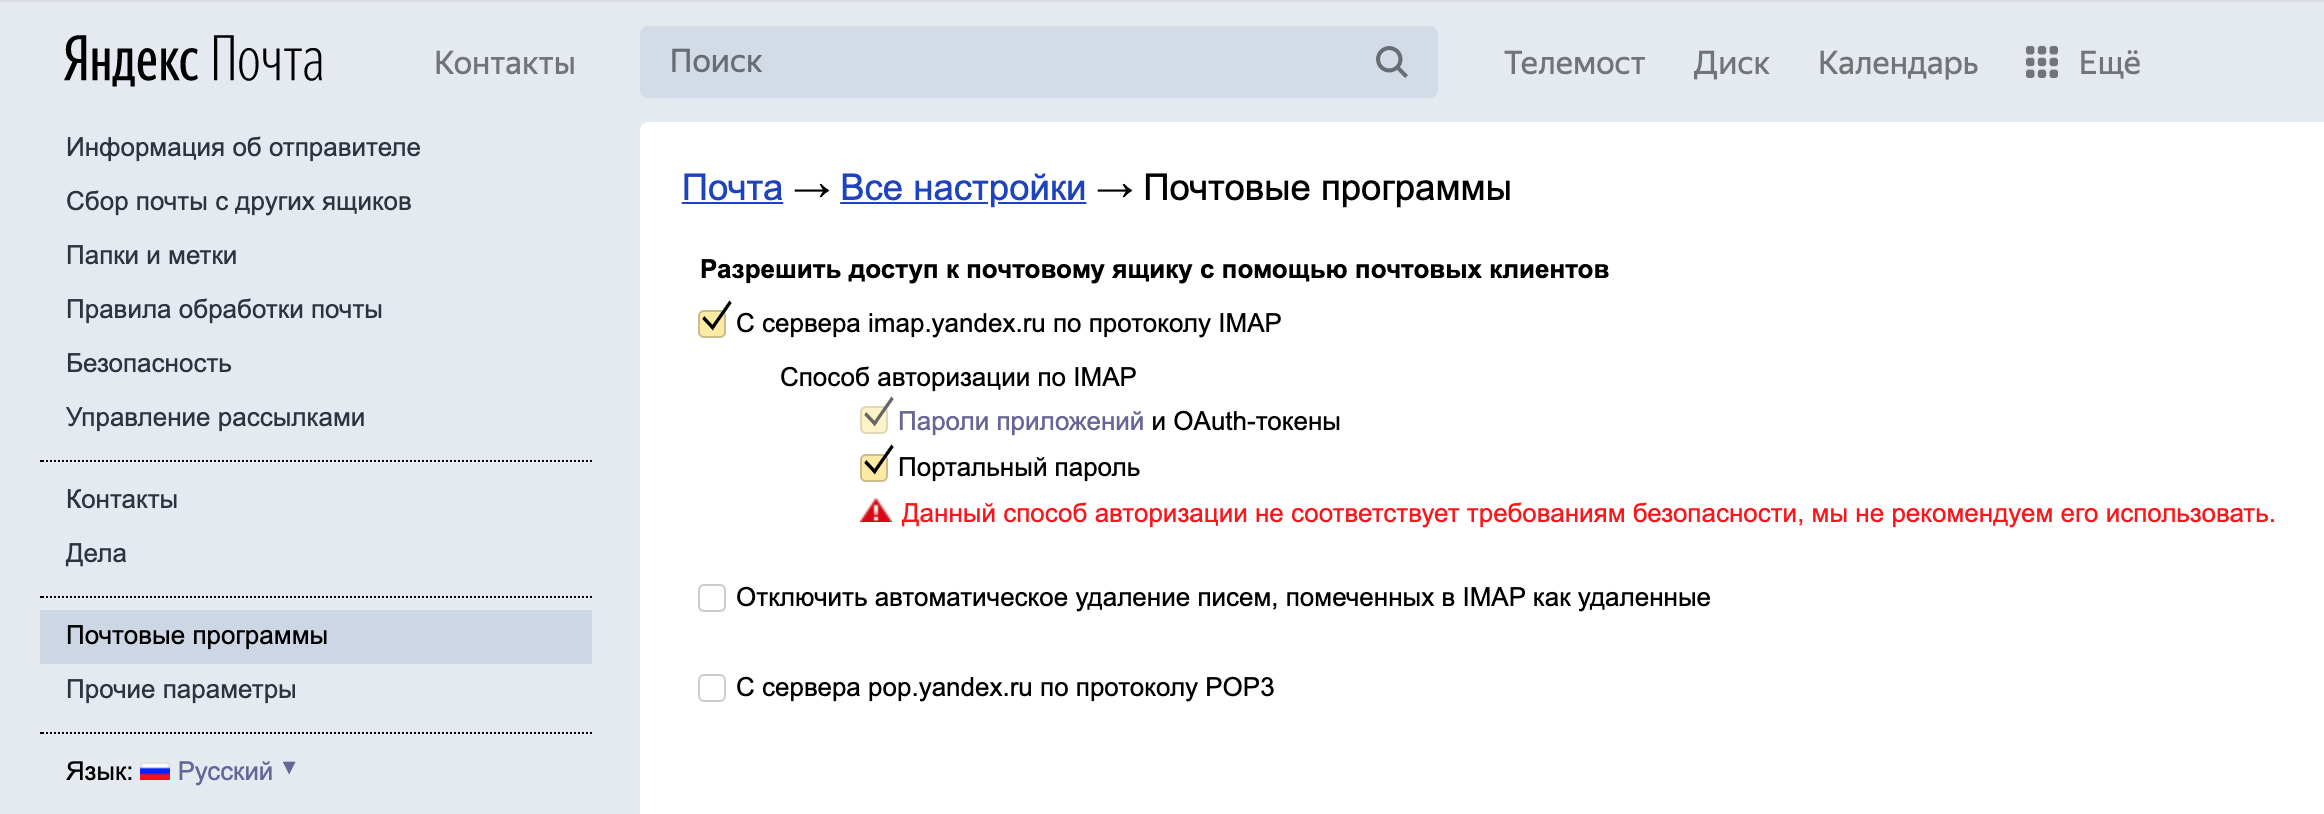 Ссылка на профиль Яндекса